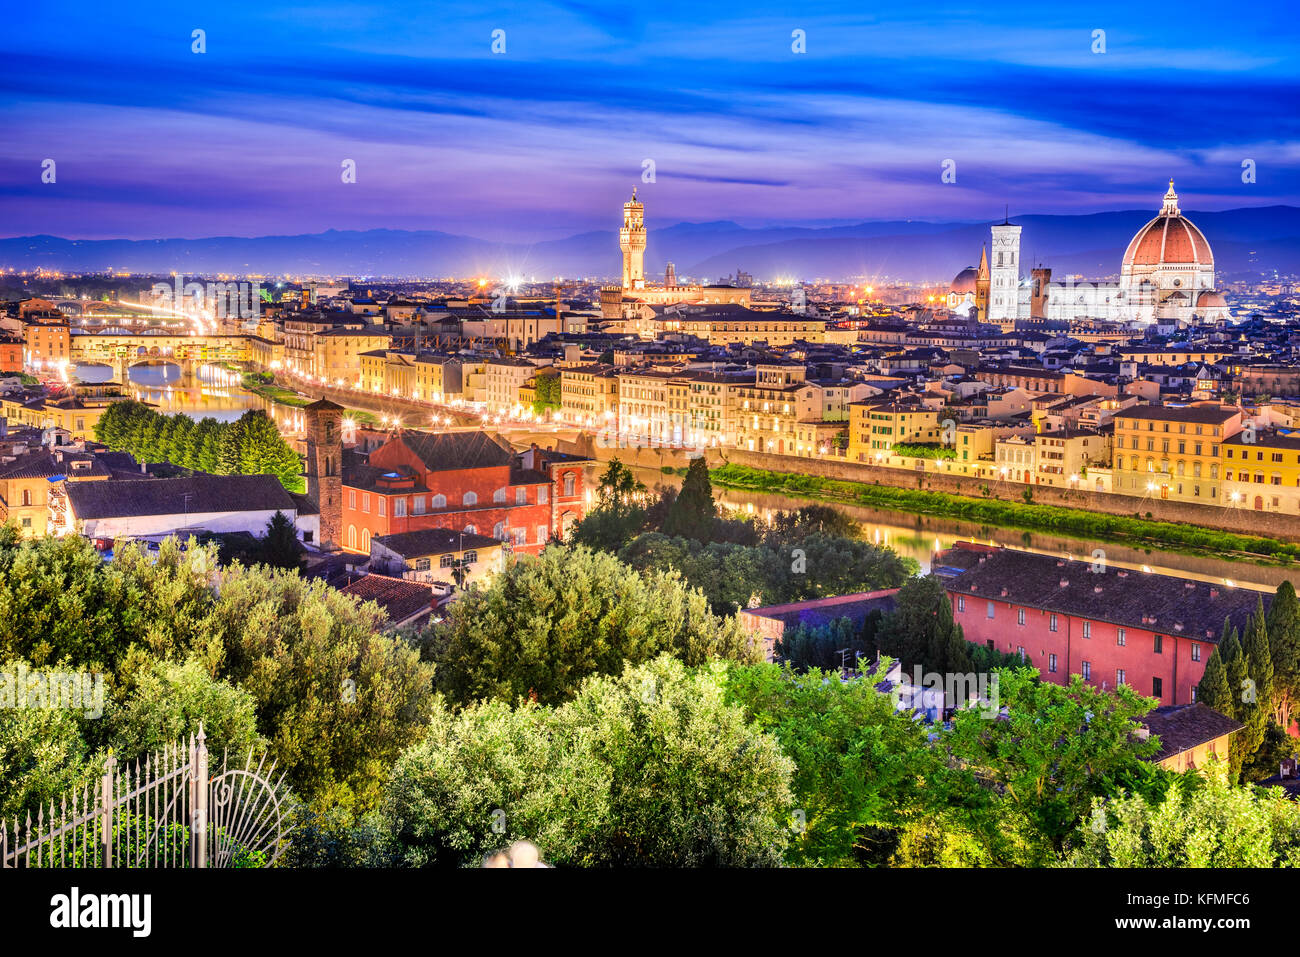 Florenz, Toskana - Nacht Landschaft mit Duomo Santa Maria del Fiori und Palazzo Vecchio, Architektur der Renaissance in Italien. Stockfoto